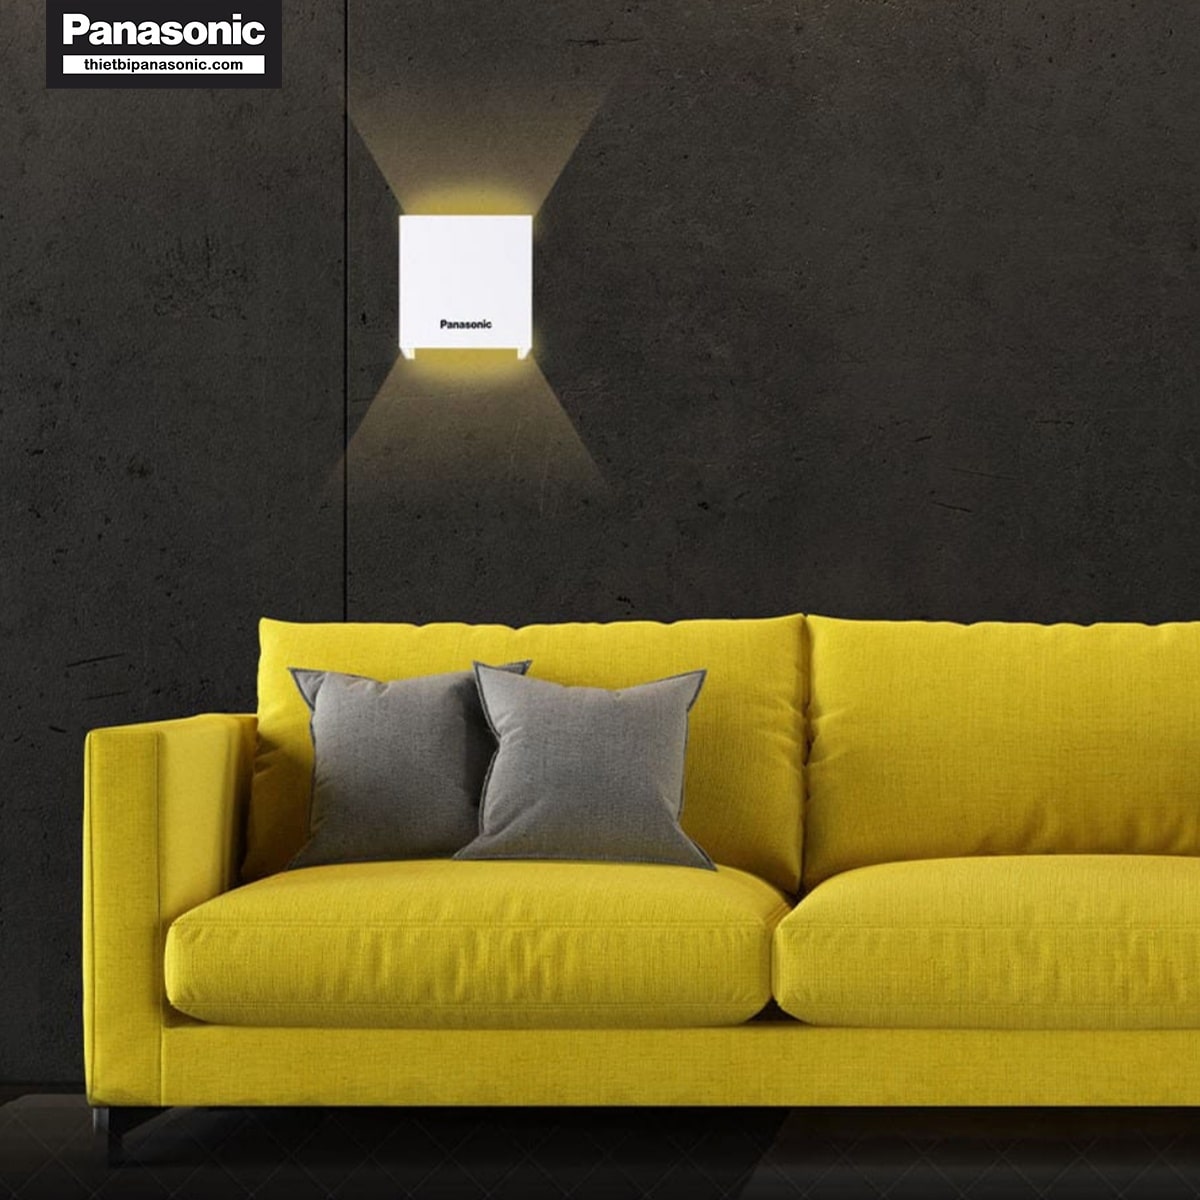 Đèn hắt tường Panasonic HHBQ1005B88 Màu Đen có tuổi thọ bền bỉ lên đến 20.000 giờ